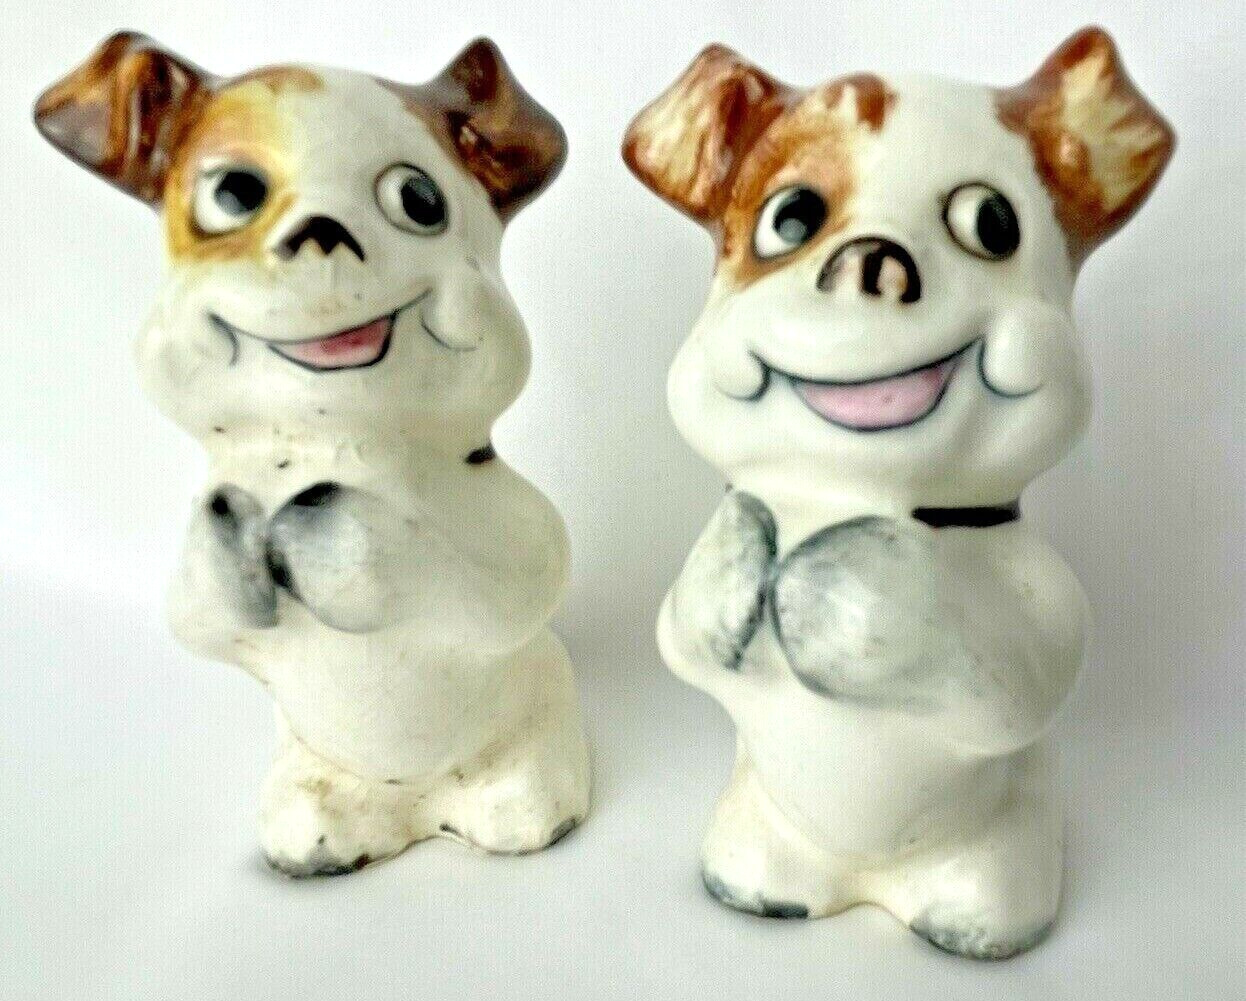 Vintage Japan Bonzo Dogs Puppies Begging Salt Pepper Shakers Cute Unusual